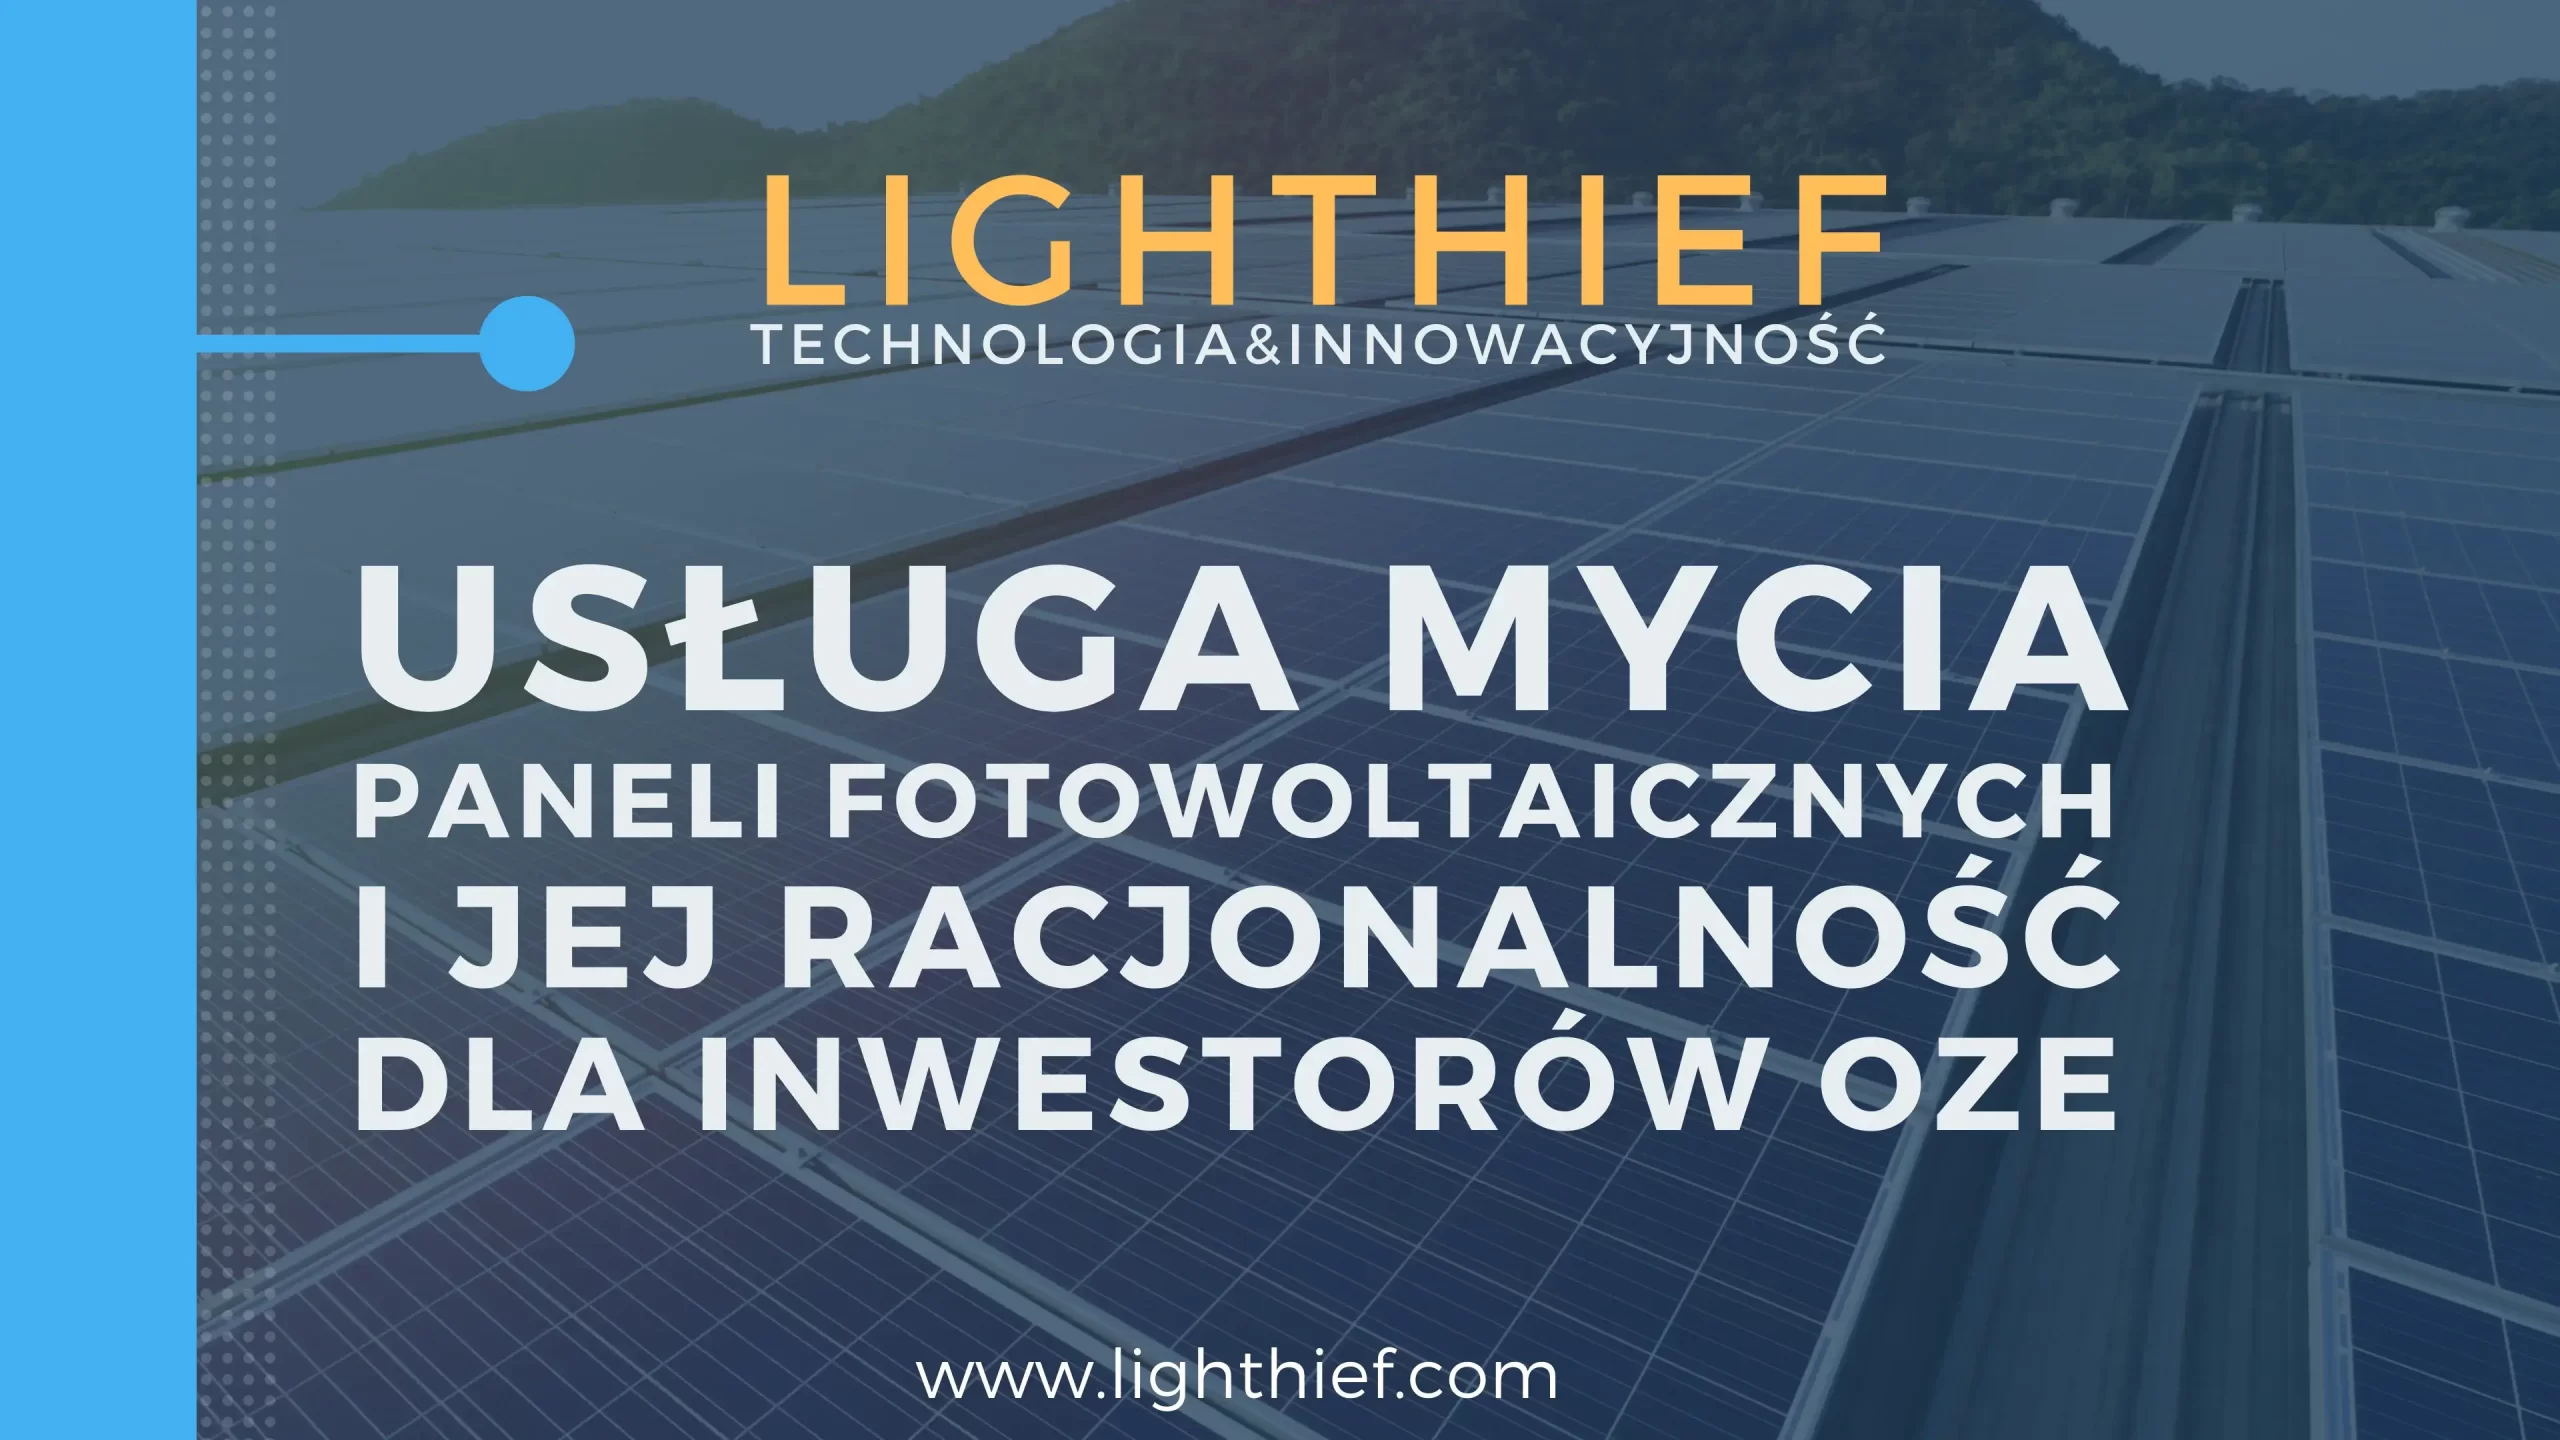 Lighthief-Mycie-paneli-fotowoltaicznych-dla-inwestorów